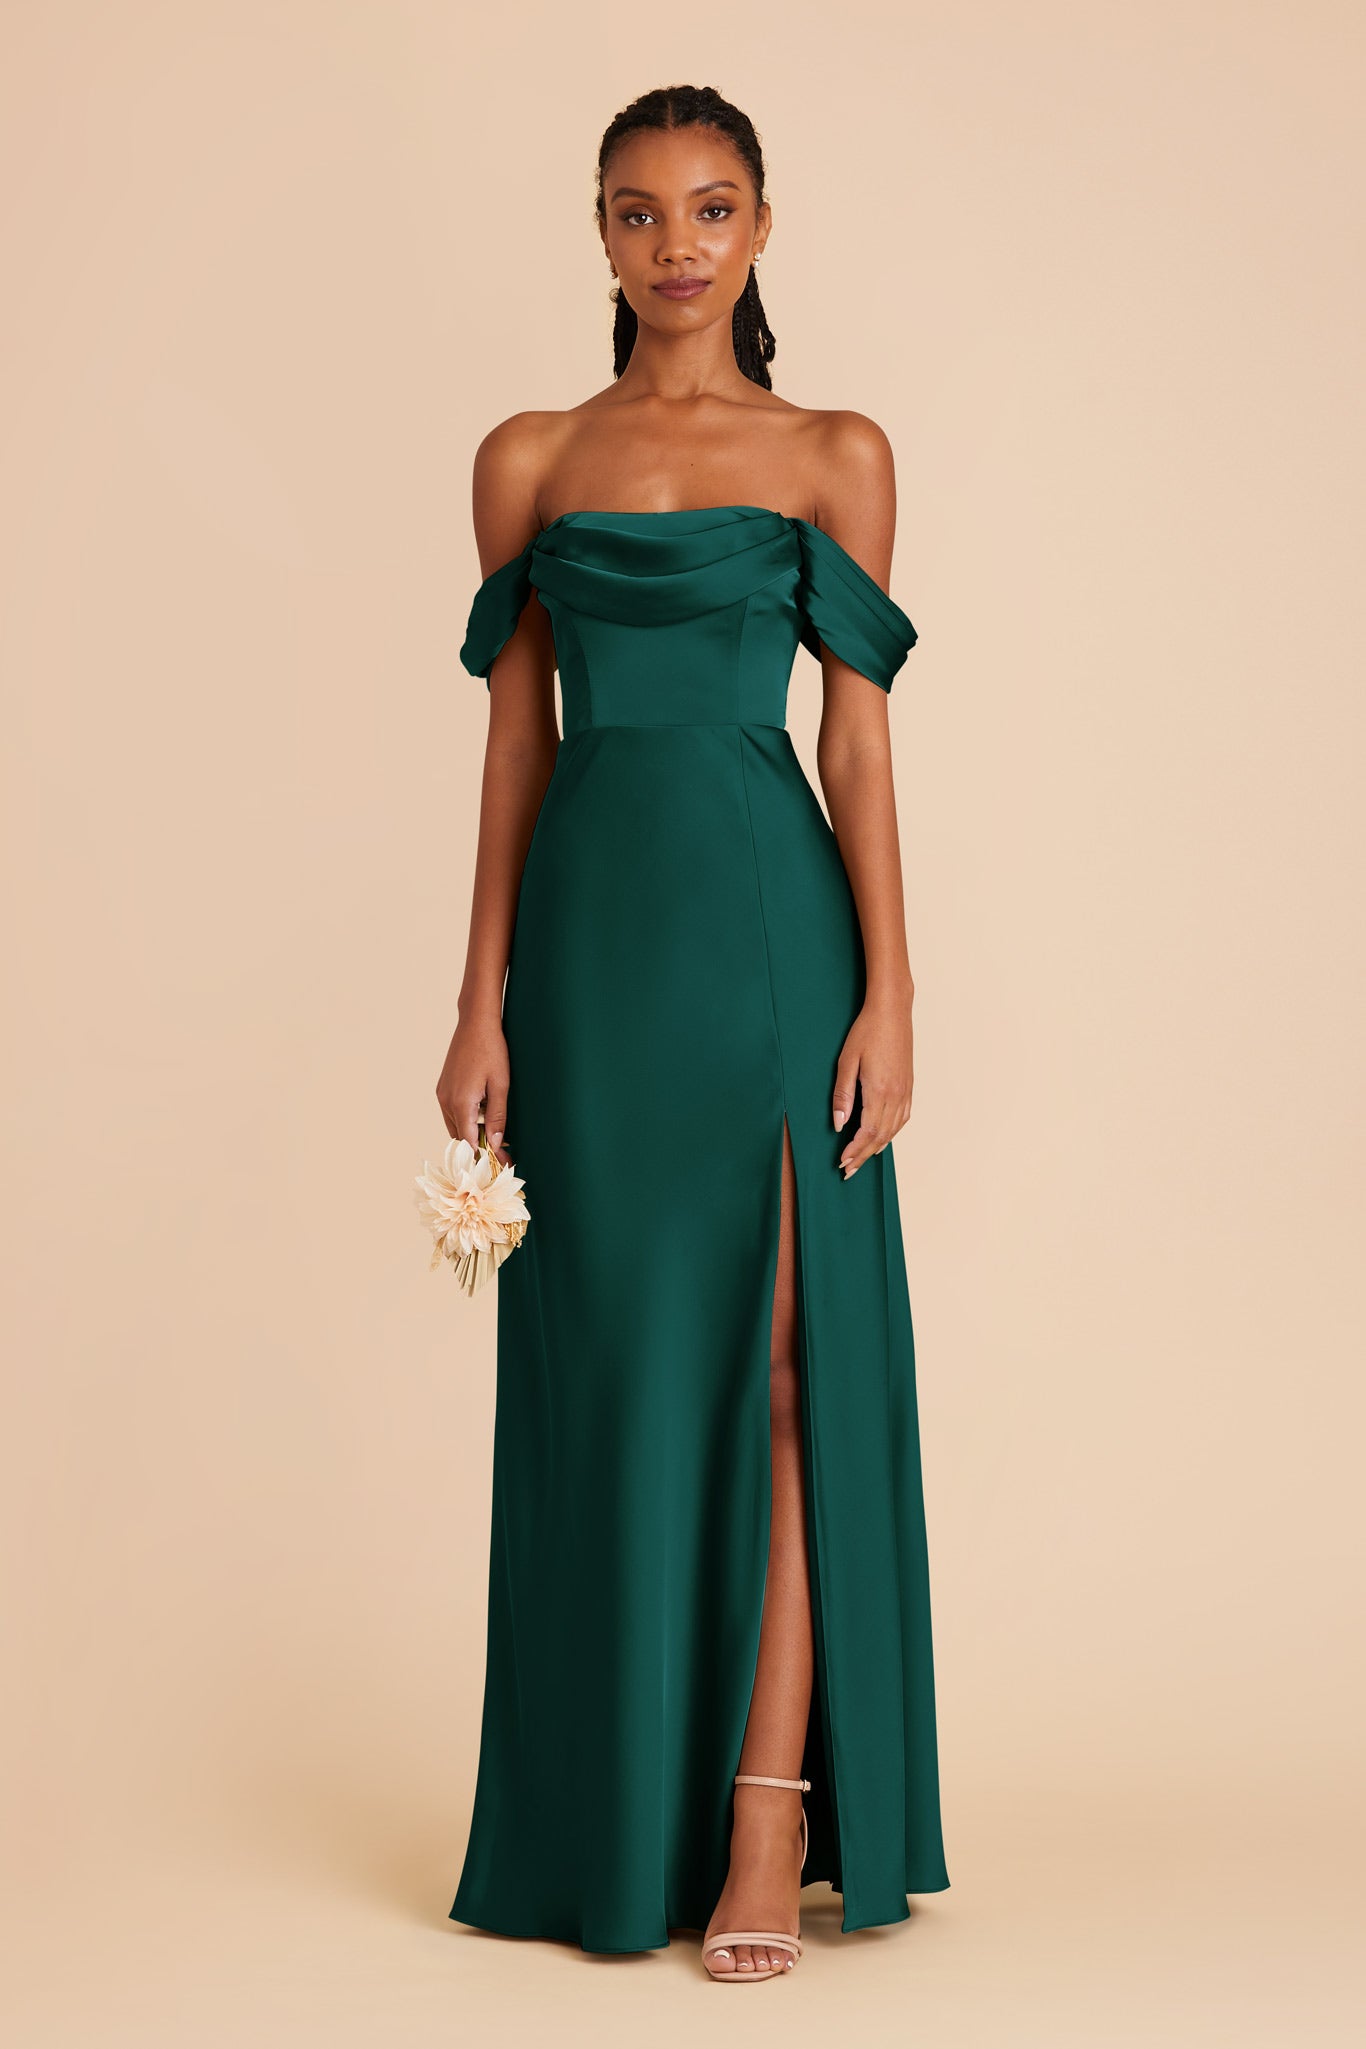 Emerald Mia Matte Satin Dress by Birdy Grey